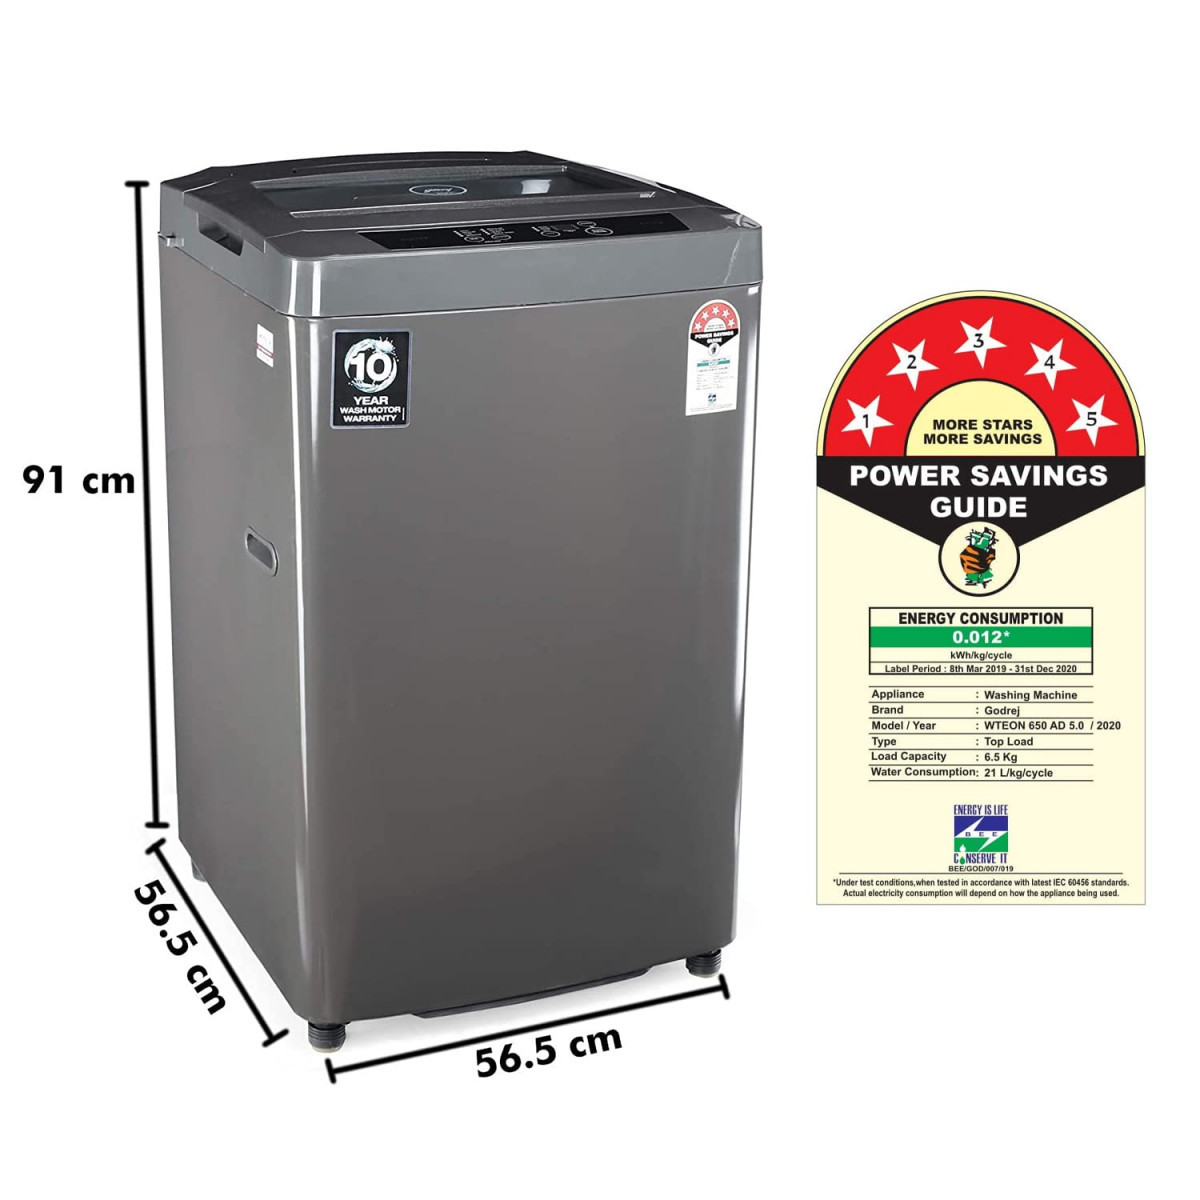 Godrej 65 Kg 5 Star Fully-Automatic Top Loading Washing Machine WTEON 650 AD 50 ROGR Grey Acu Wash Drum